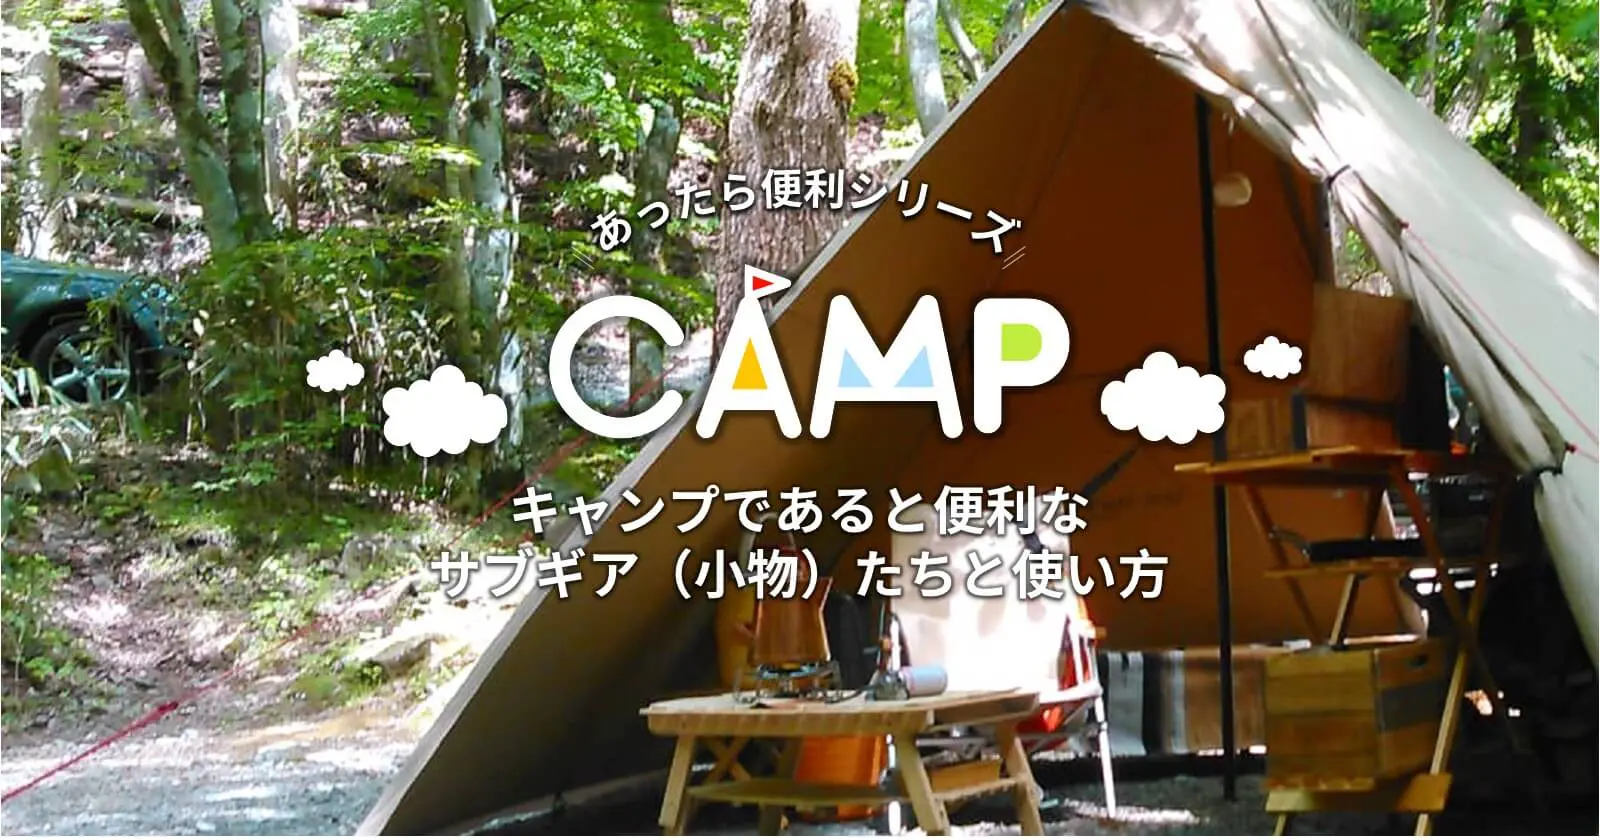 キャンプであると便利なサブギア 小物 たちと使い方 キャンプ アウトドアのtakibi タキビ